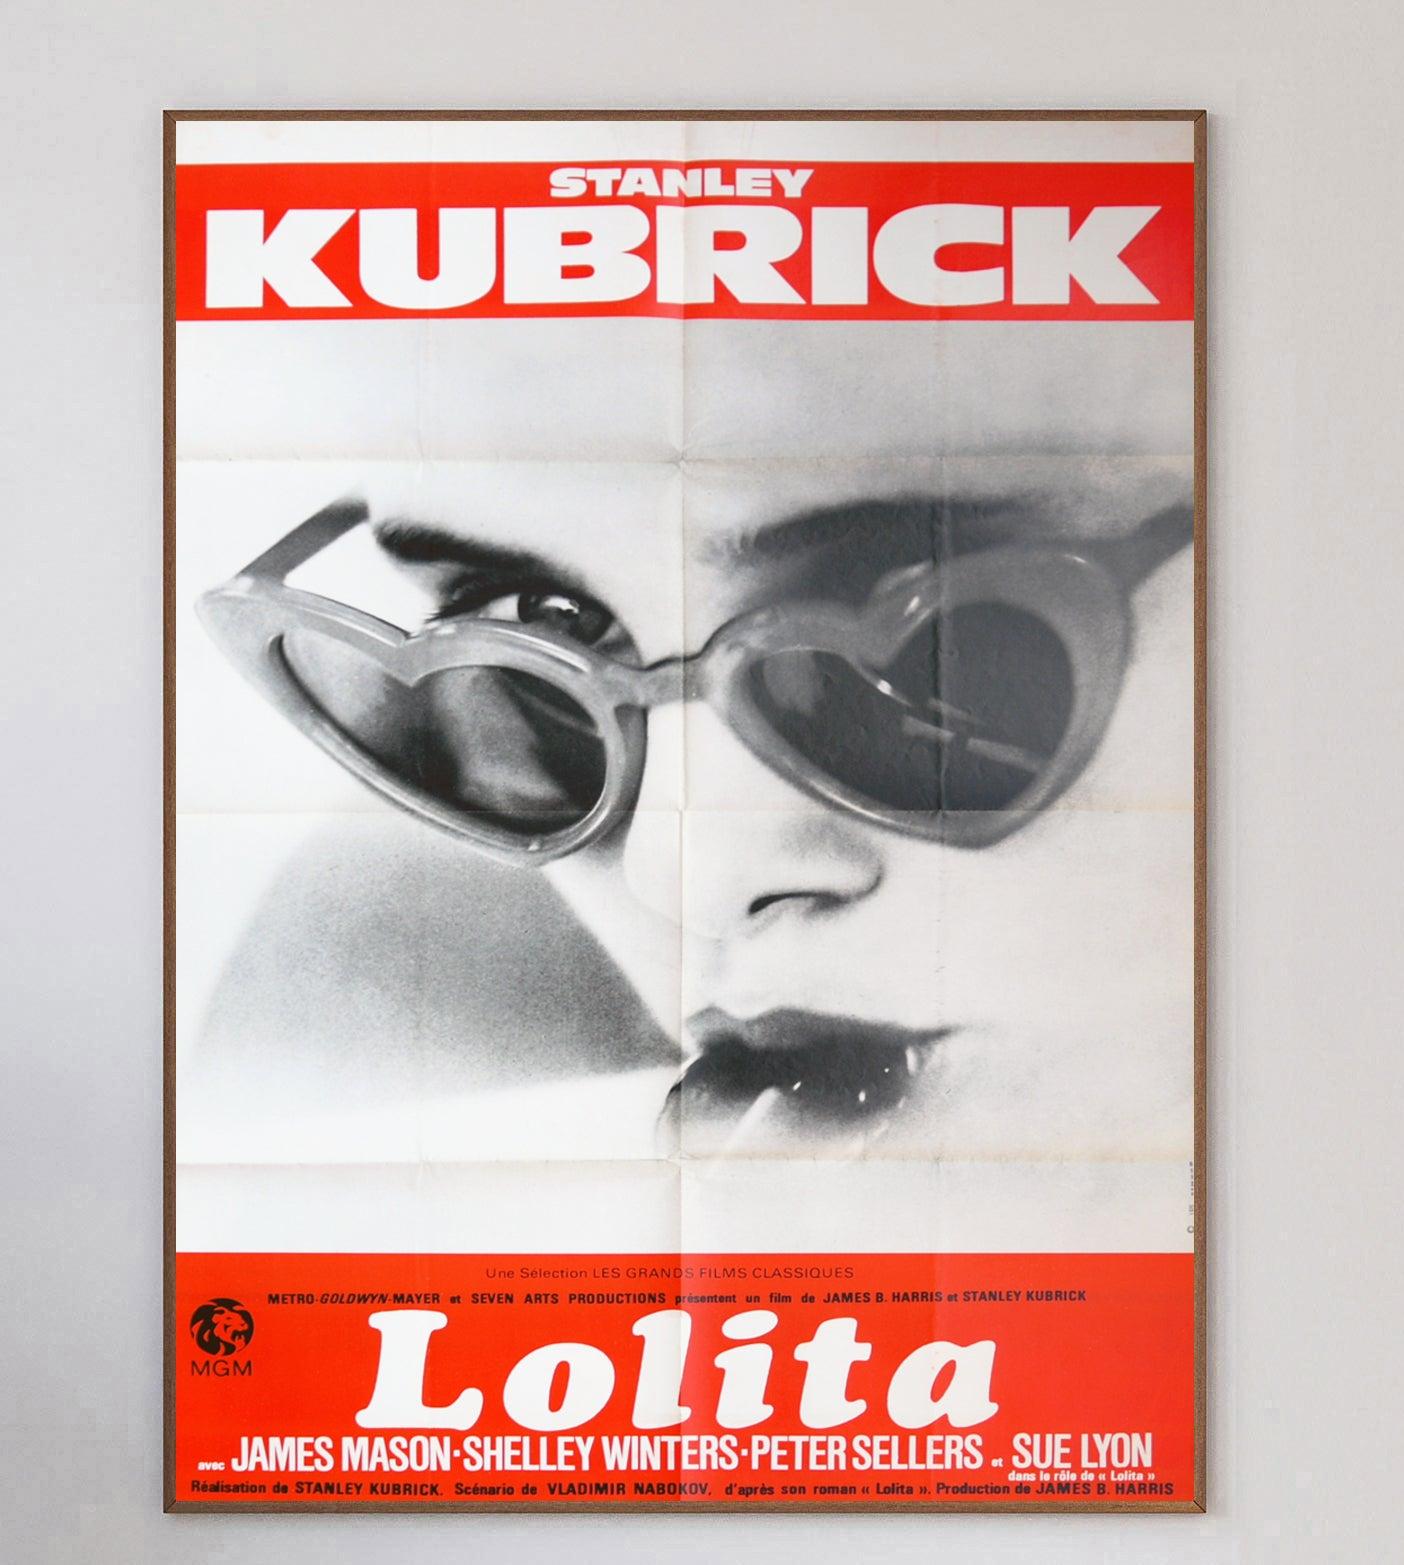 Stanley Kubricks Lolita basiert auf dem gleichnamigen Roman von Vladimir Nabokov aus dem Jahr 1955 und wurde 1962 veröffentlicht. Der Film war sehr umstritten und wurde bei seiner Veröffentlichung stark zensiert, gilt jedoch als großer kommerzieller